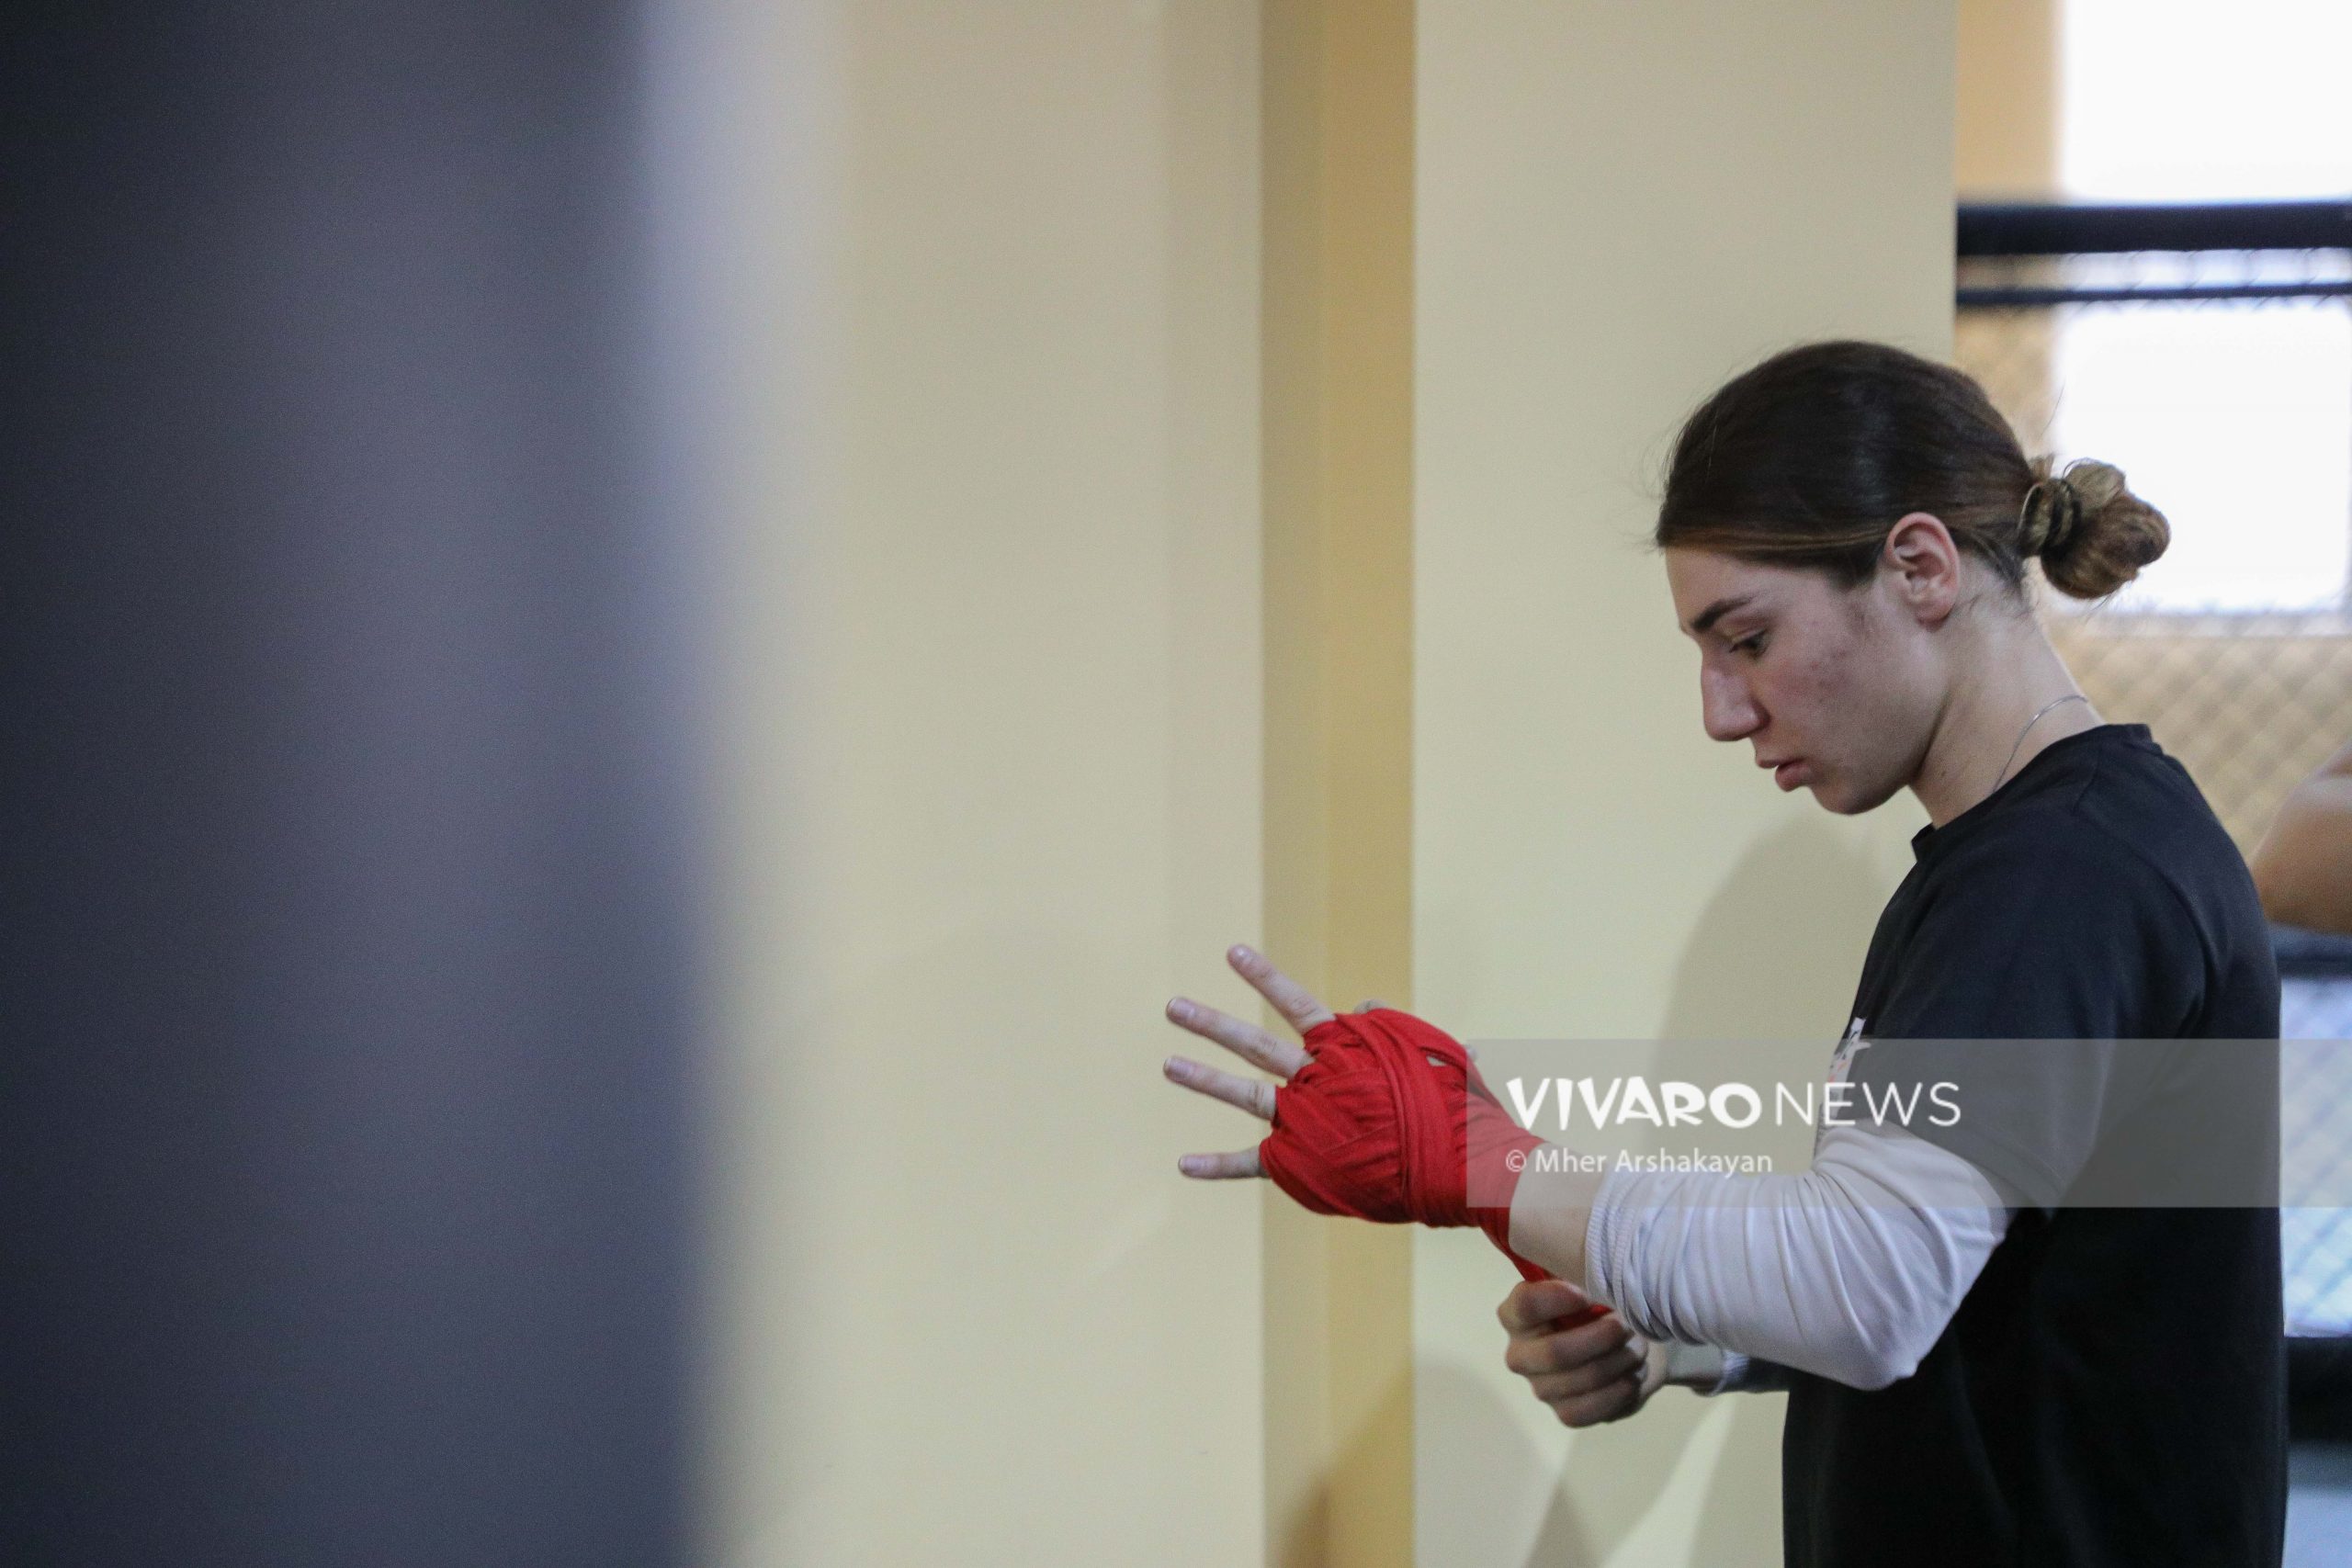 anush grigoryan boxing training 4 scaled - Հետաձգվել է կանանց բռնցքամարտի աշխարհի առաջնությունը